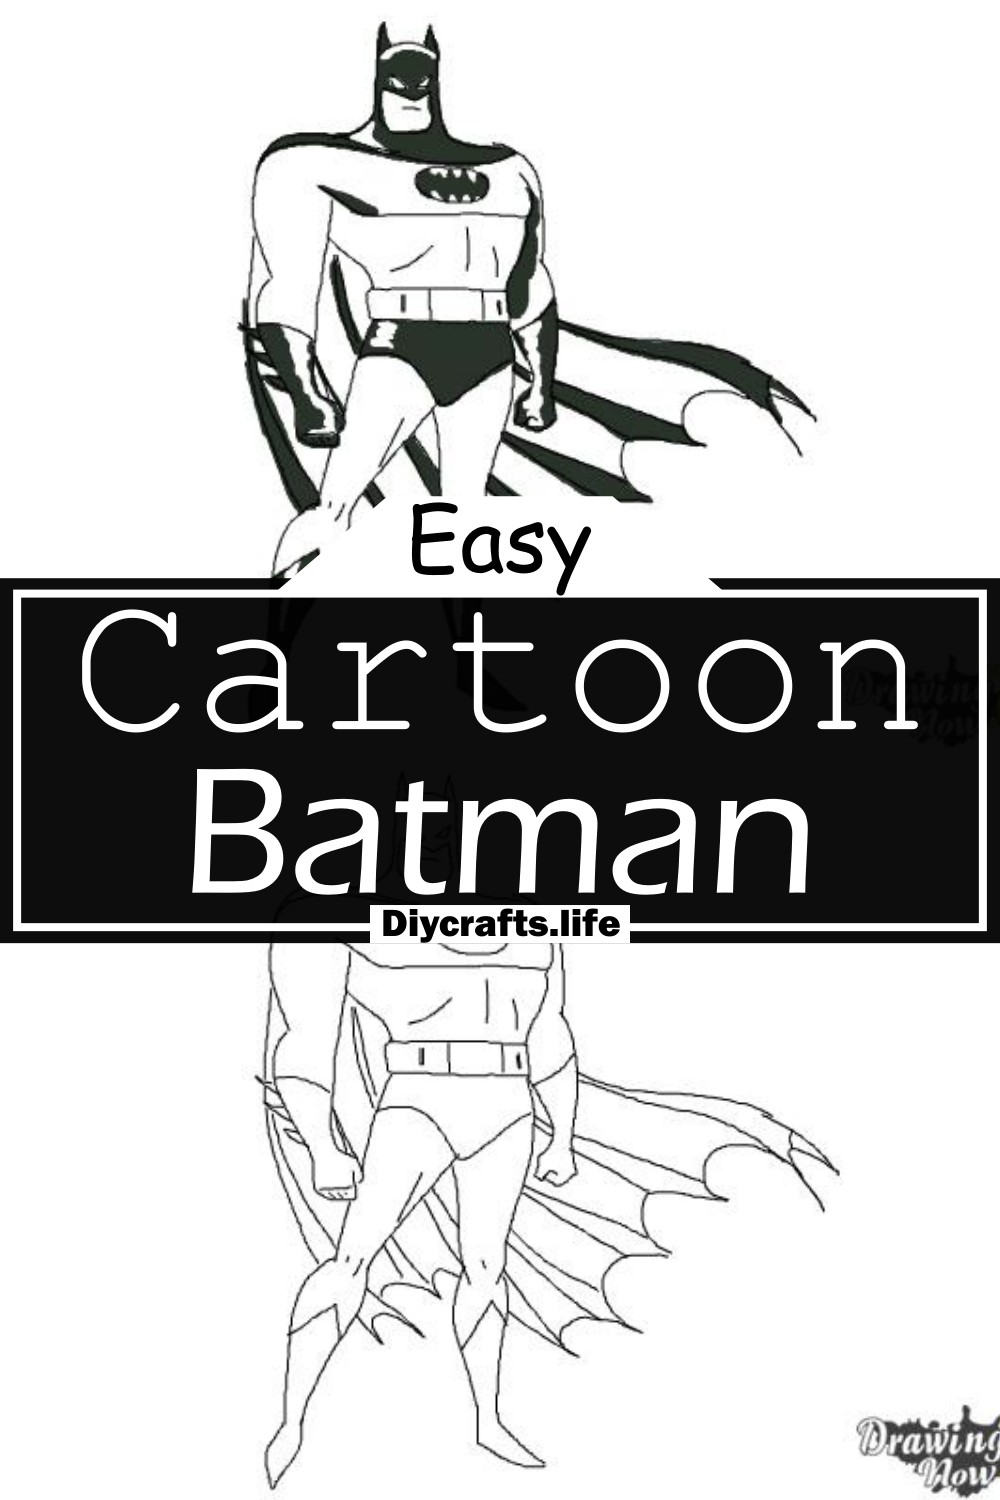 Cartoon Batman